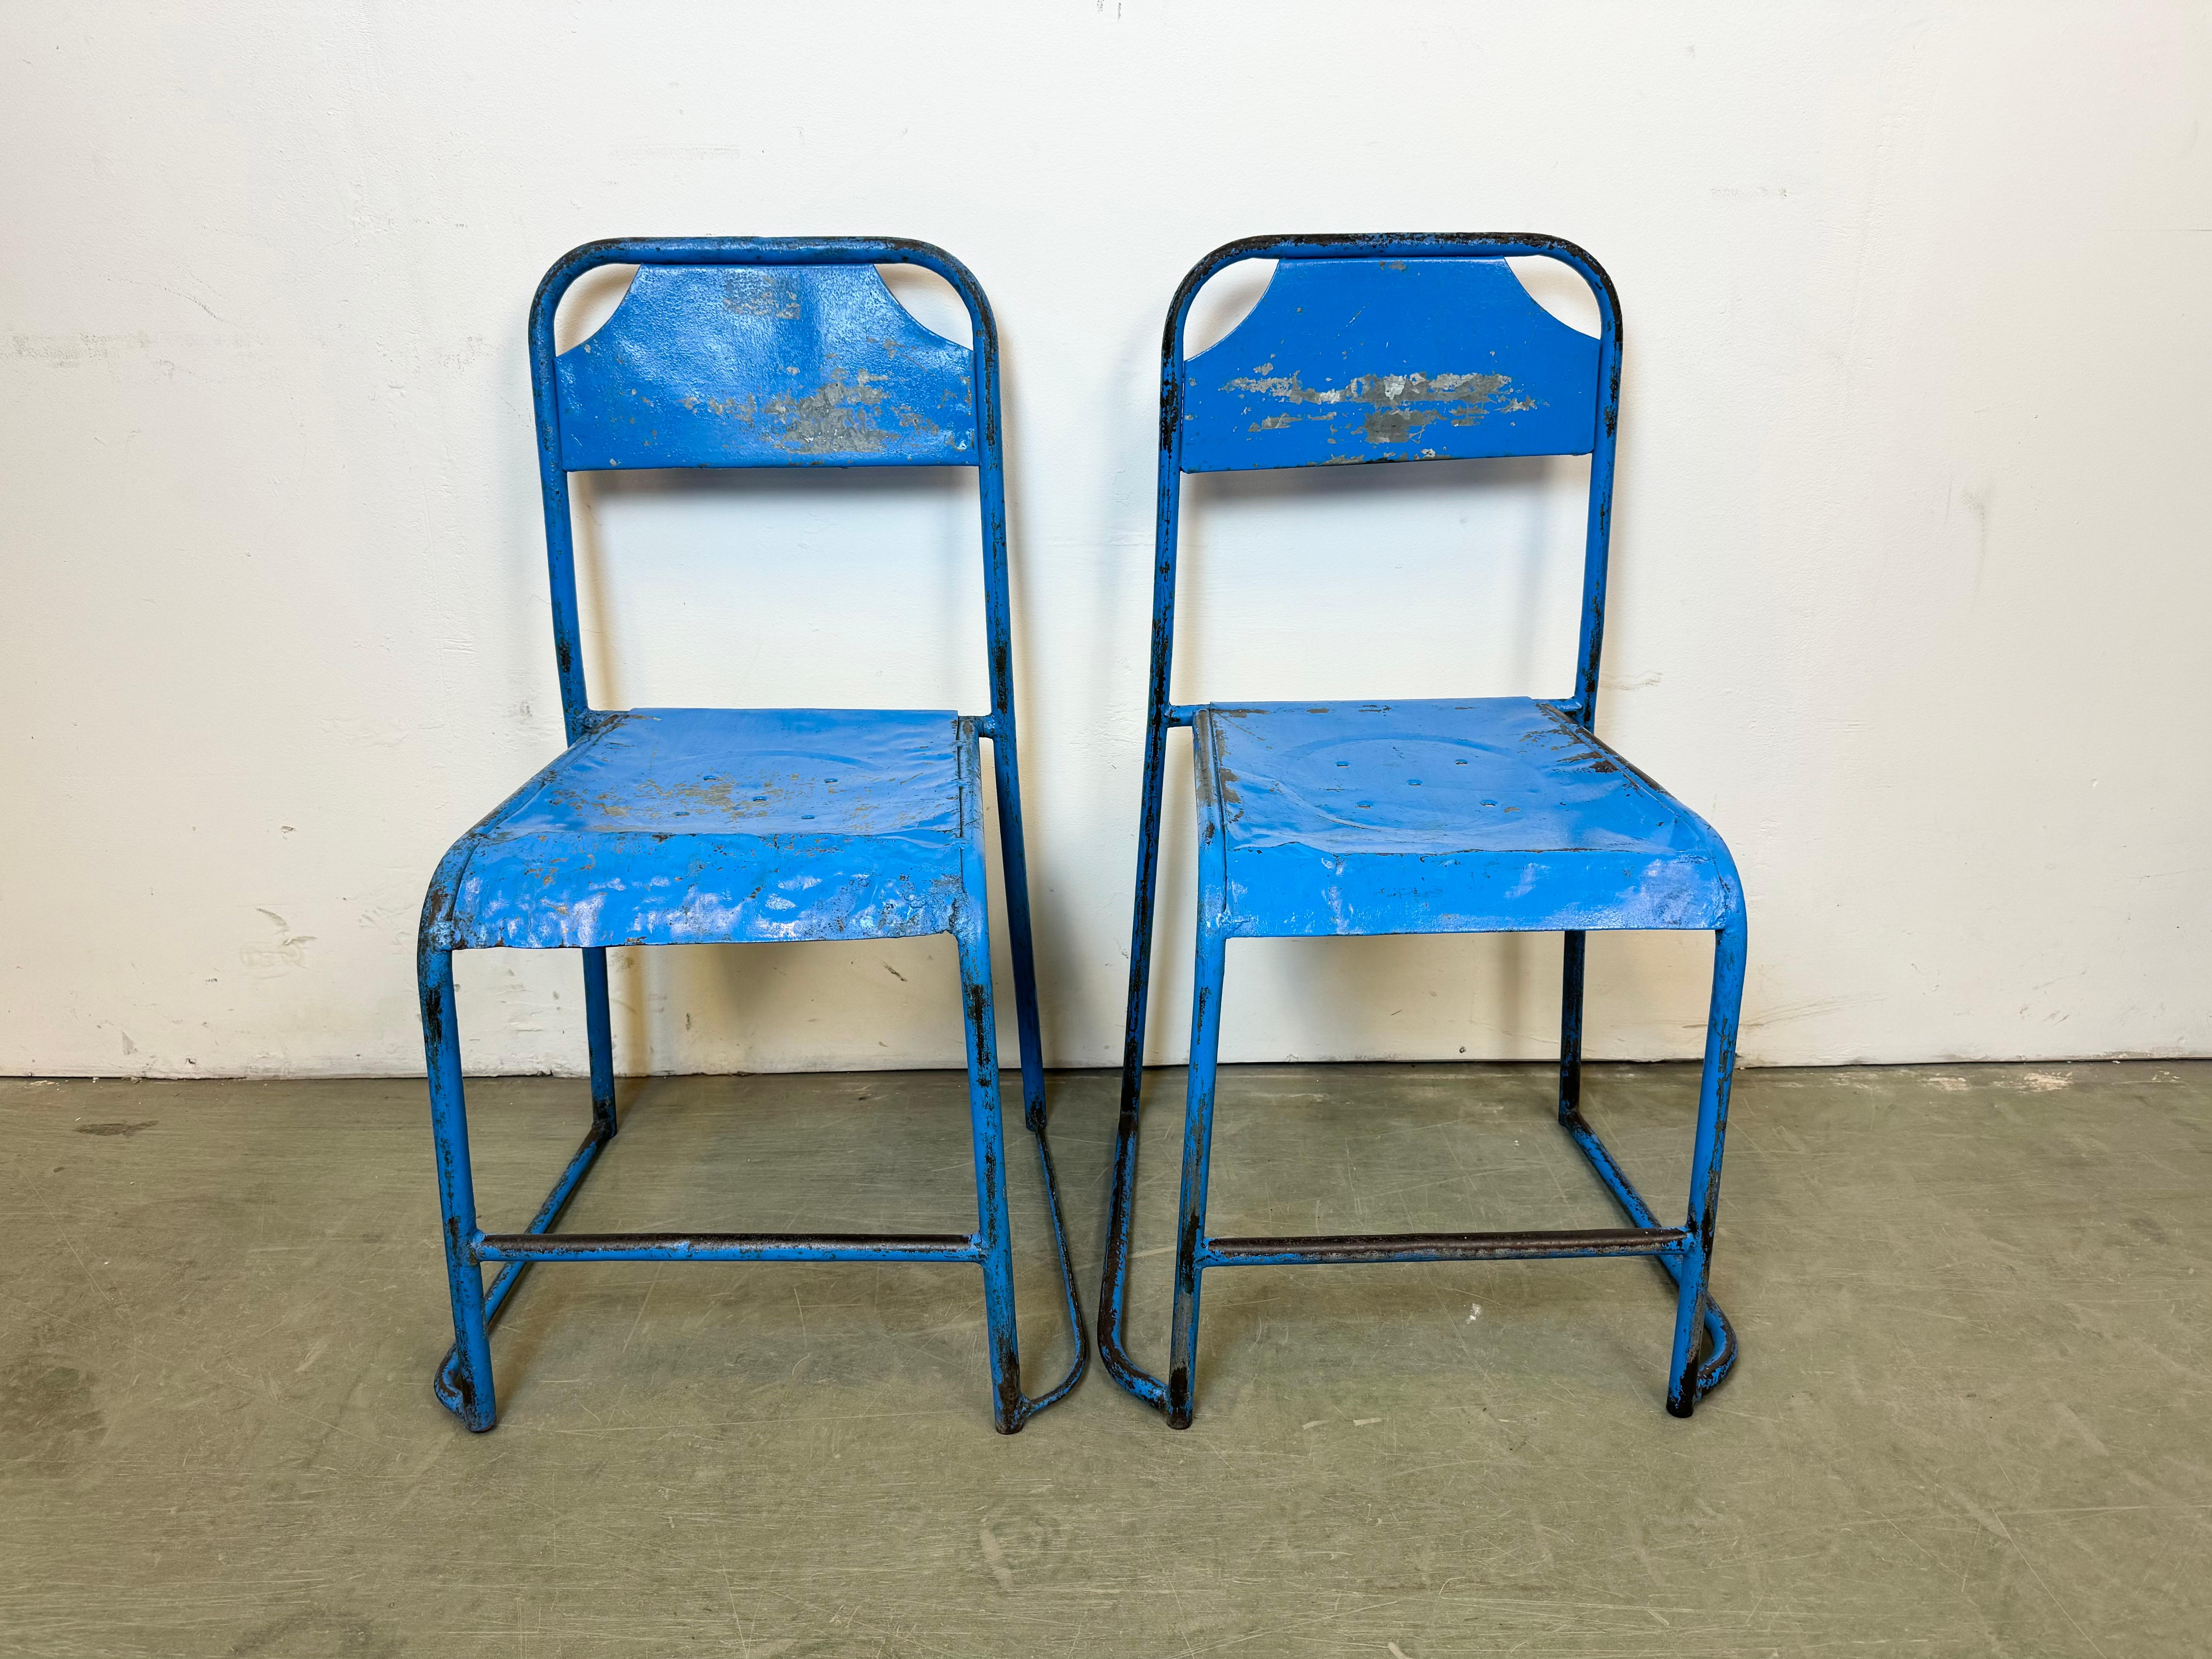 - Chaise en fer Vintage Industrial
- Fabriqué dans l'ancienne Tchécoslovaquie dans les années 1950
- Le poids de la chaise est de 4 kg.